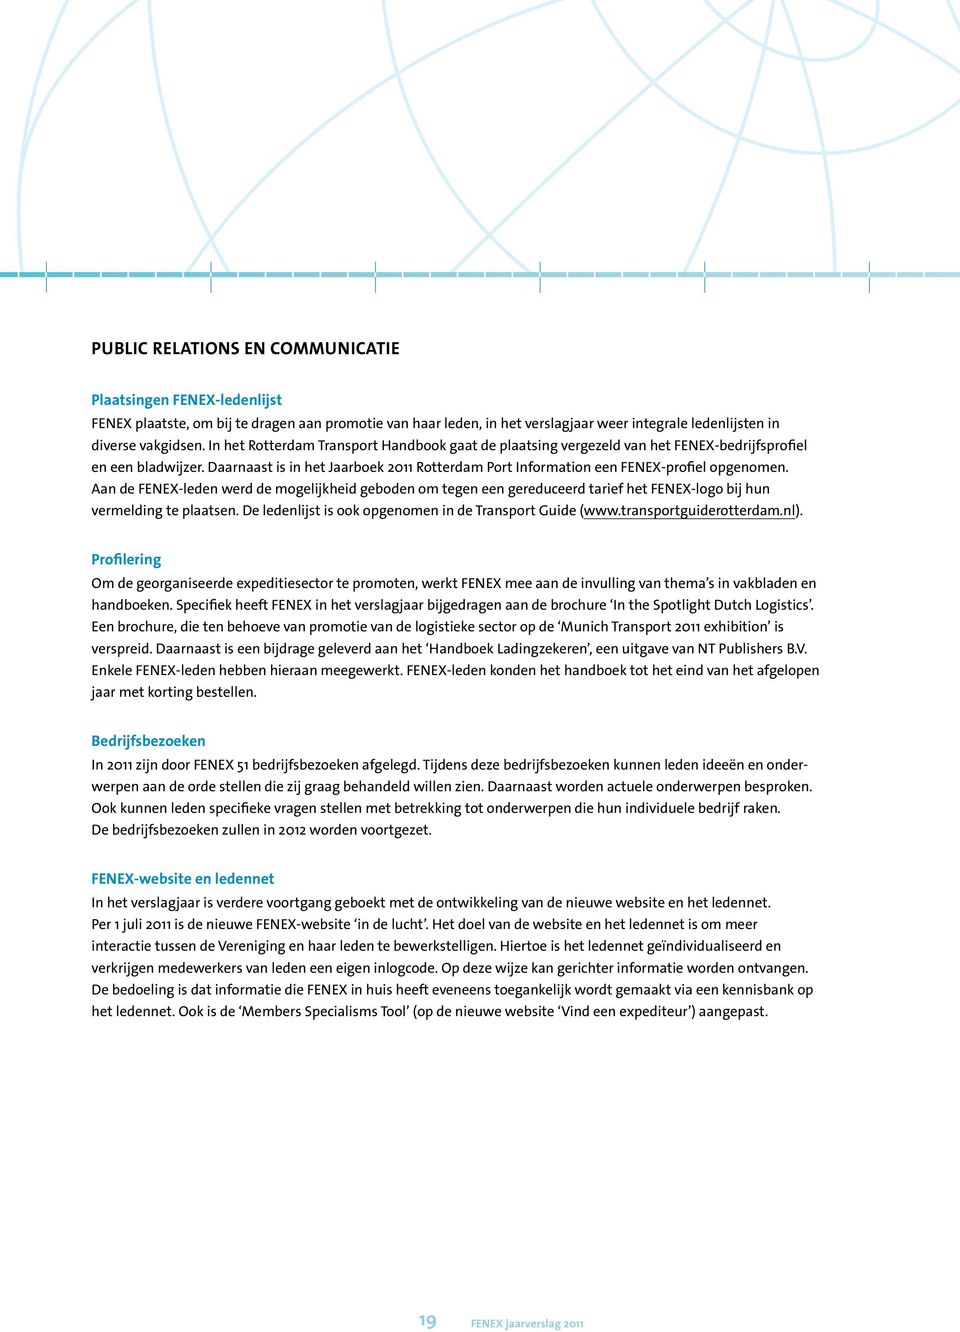 Daarnaast is in het Jaarboek 2011 Rotterdam Port Information een FENEX-profiel opgenomen.